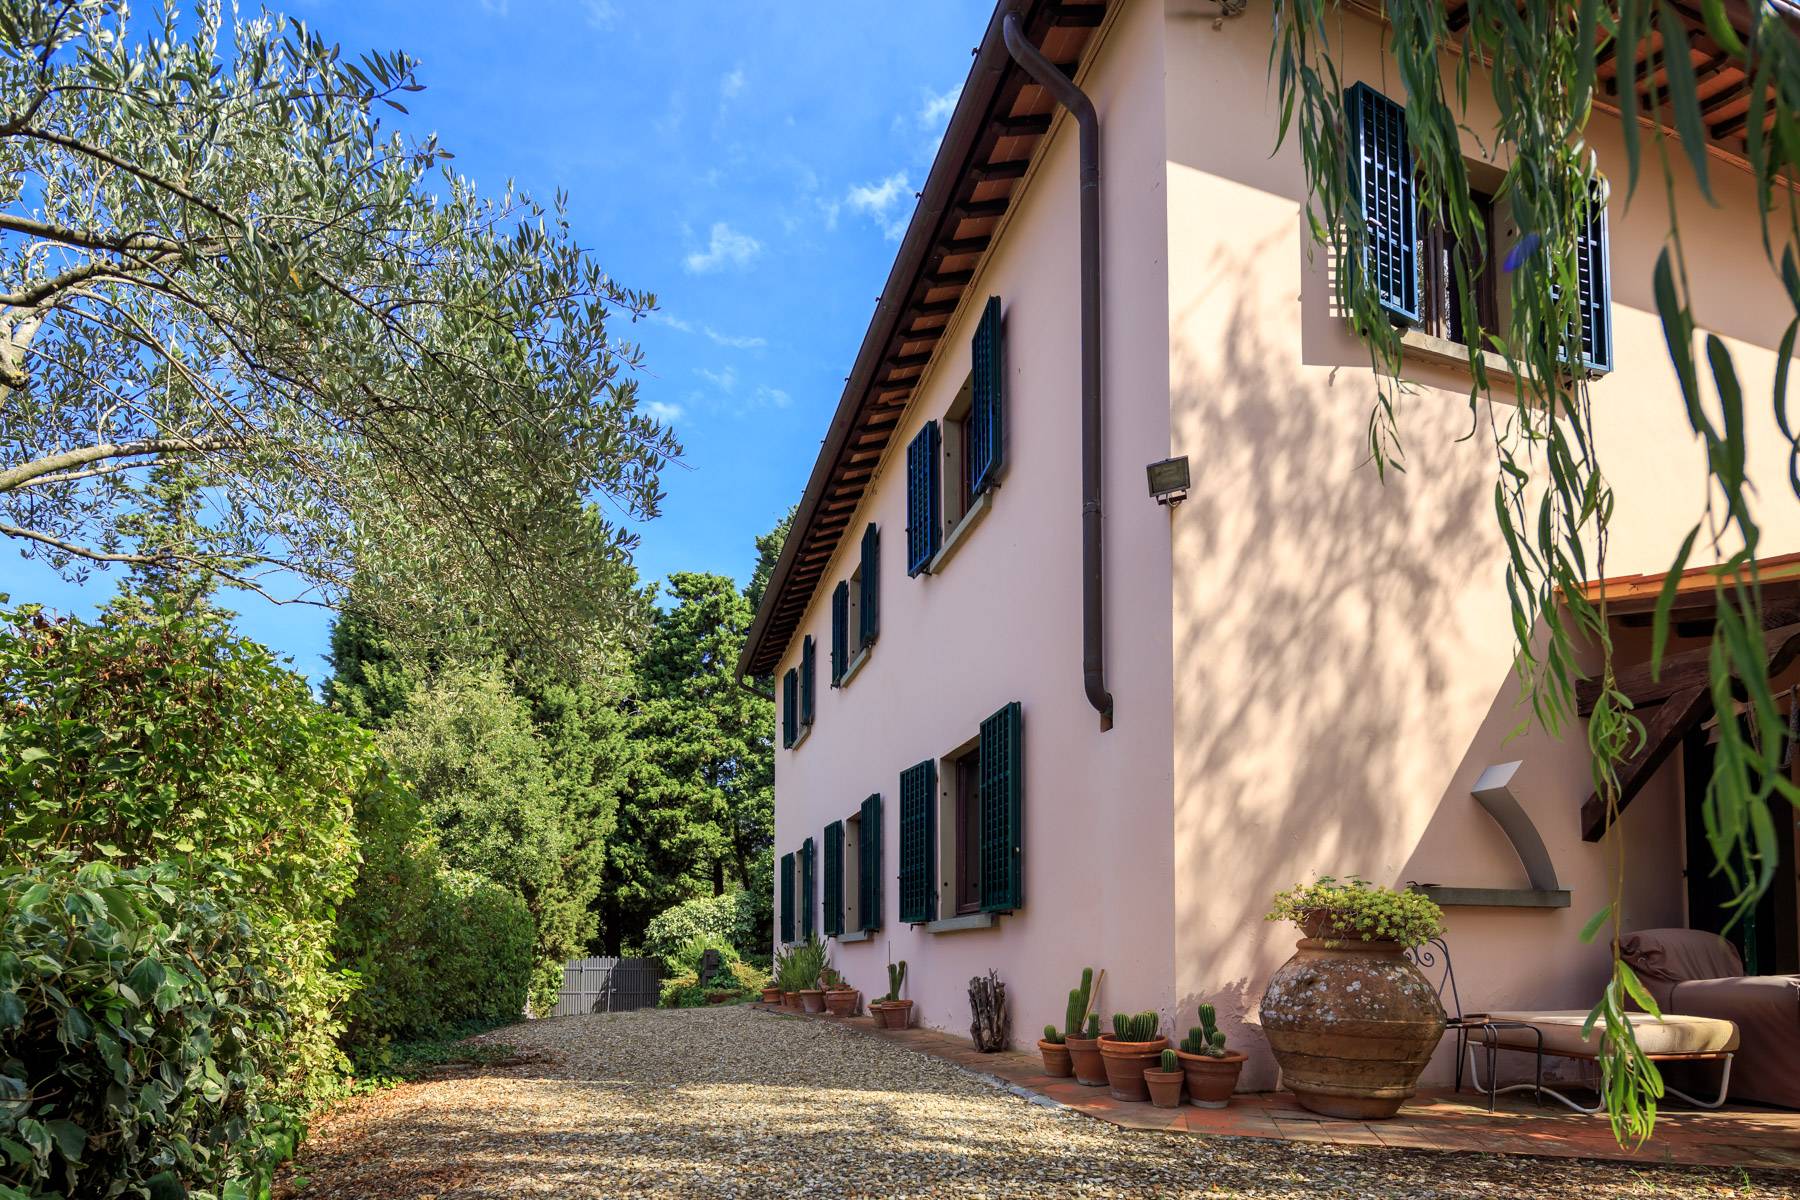 Casa indipendente in Vendita a Fiesole: 5 locali, 340 mq - Foto 4